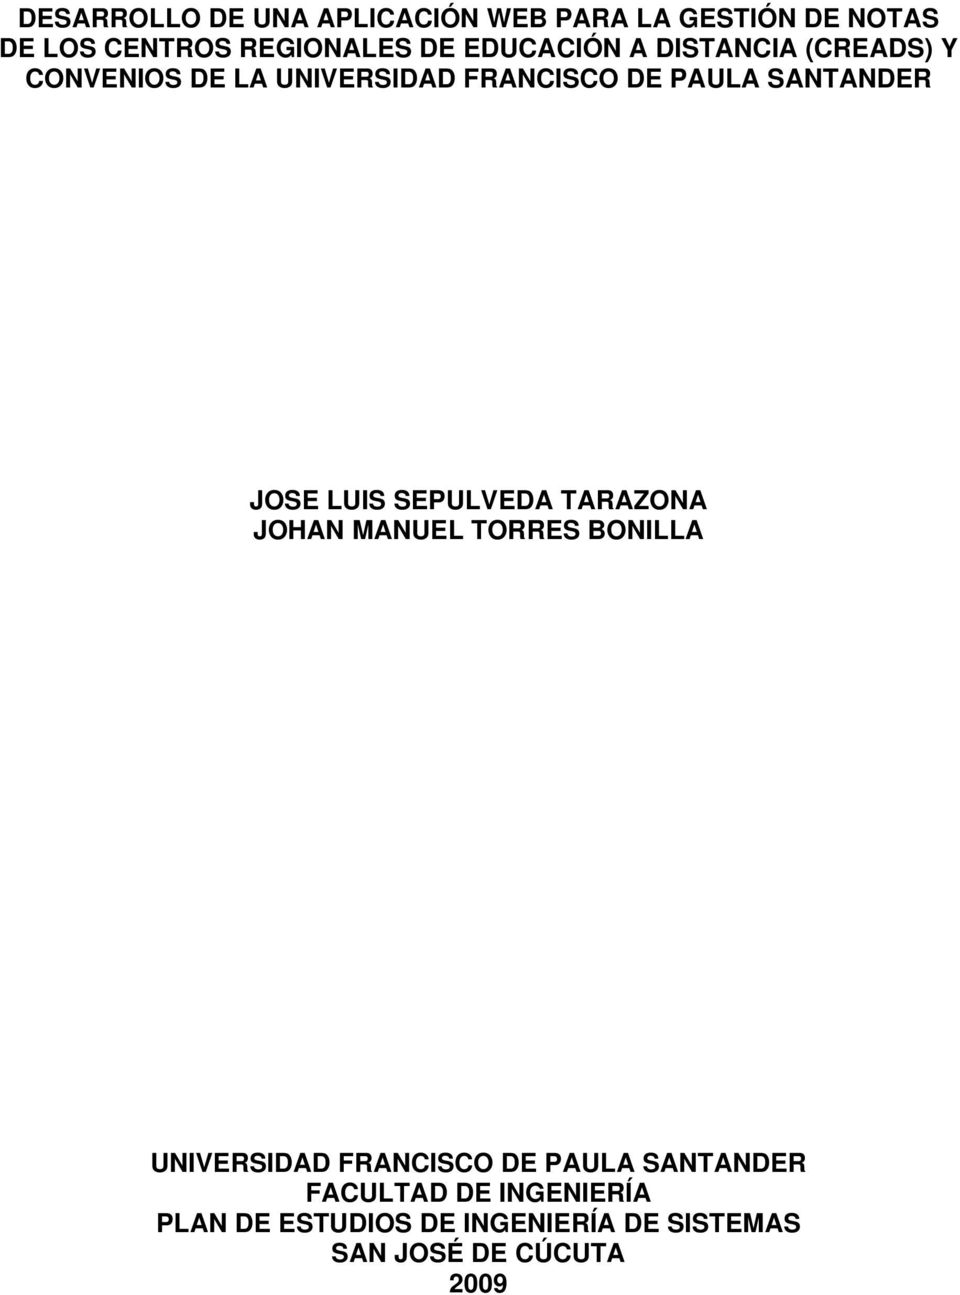 JOSE LUIS SEPULVEDA TARAZONA JOHAN MANUEL TORRES BONILLA UNIVERSIDAD FRANCISCO DE PAULA